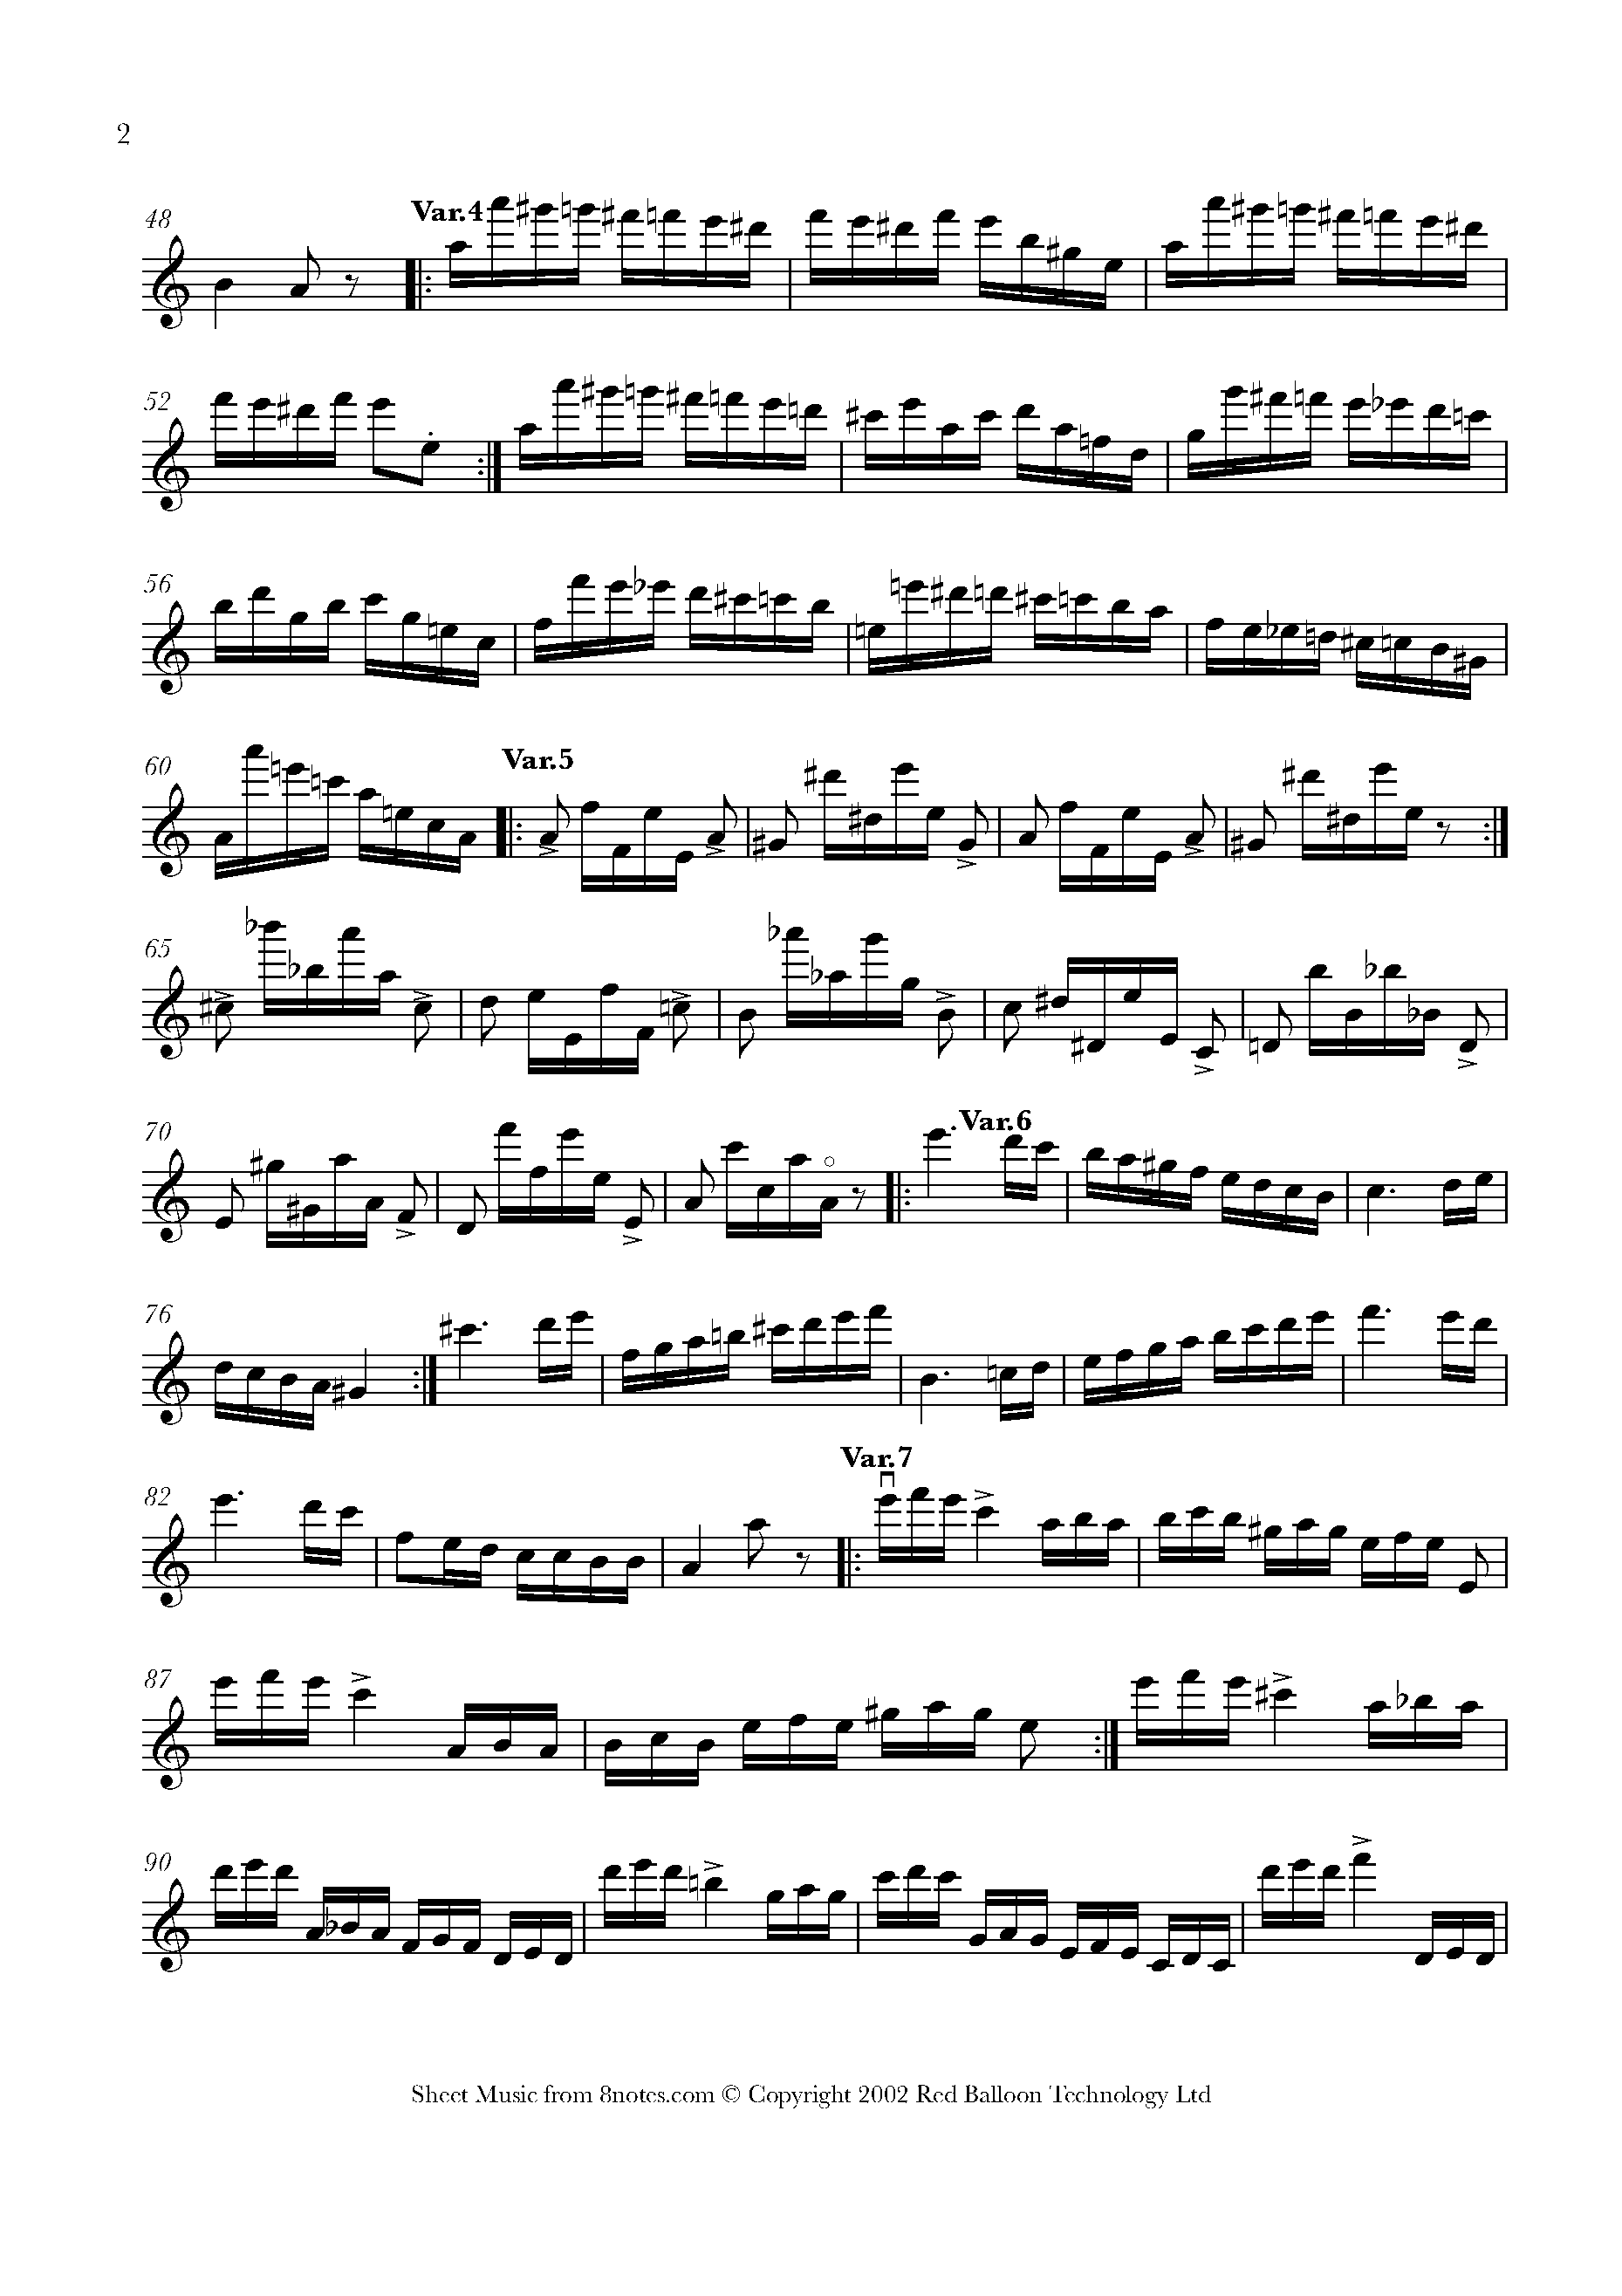 Paganini: 24 Caprices. Паганини каприз 24. Каприс № 24 ля минор Никколо Паганини. Каприс 24 Паганини рисунок. Лист транскрипция каприс 24